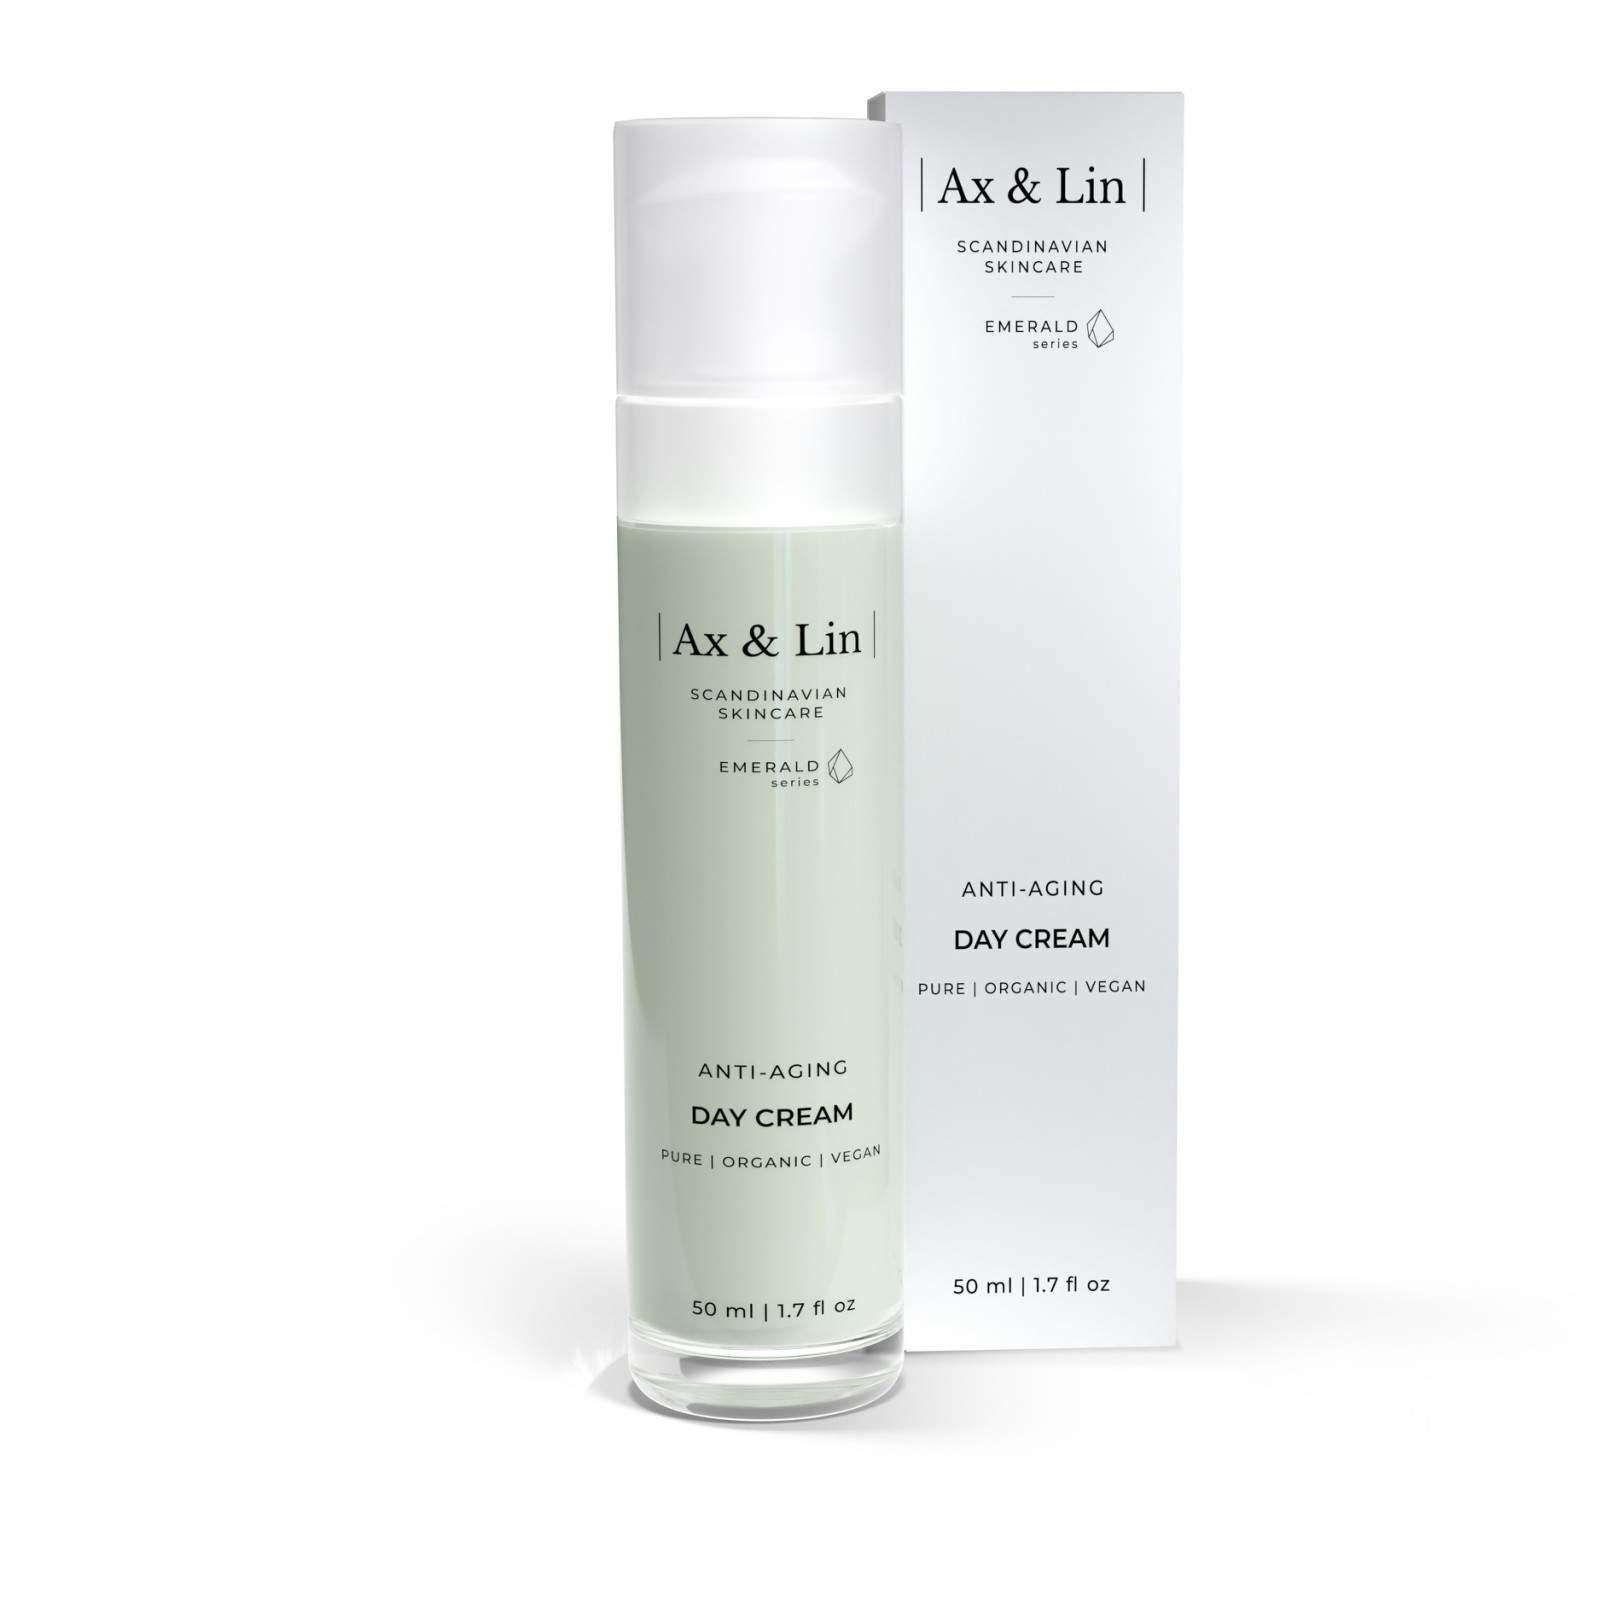 Ax & Lin - Anti-aging Day Cream 50ml